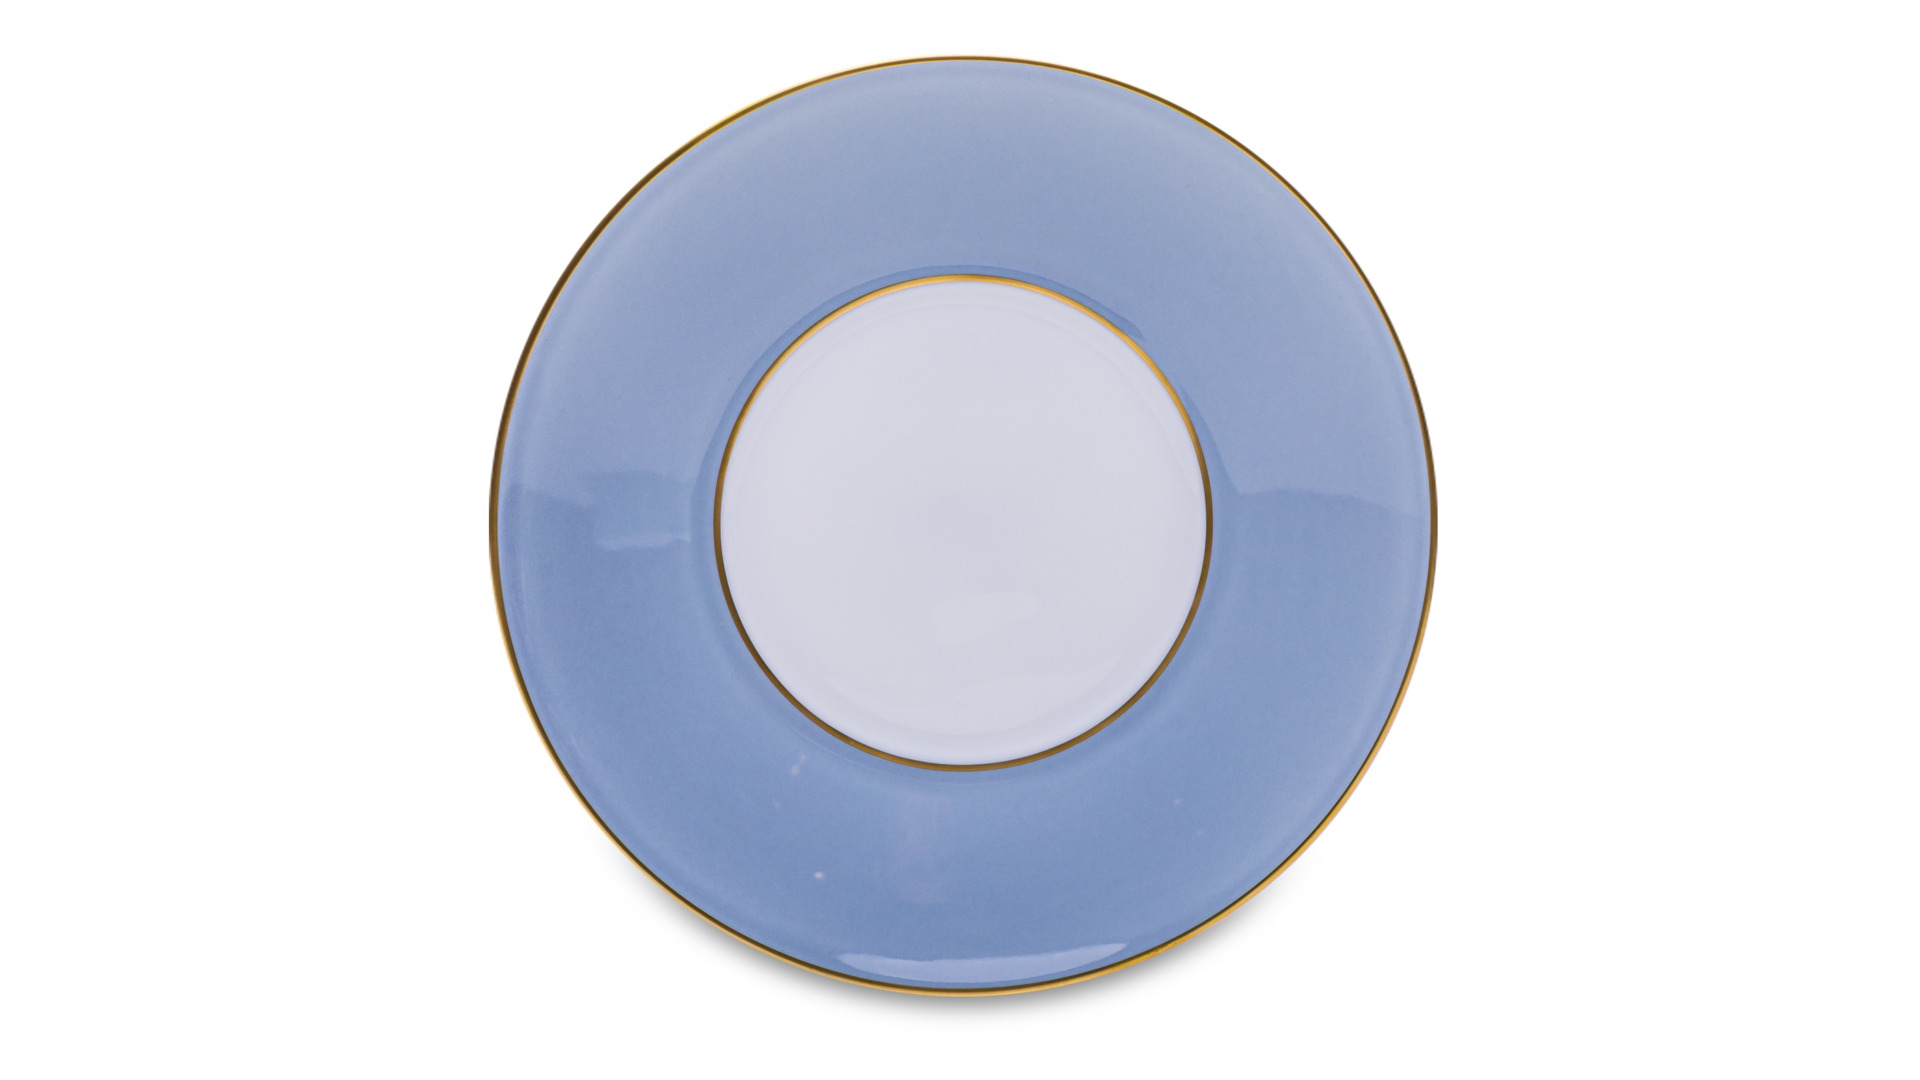 Чашка чайная с блюдцем Legle Под солнцем 250 мл, фарфор, светло-голубой, матовый золотой кант